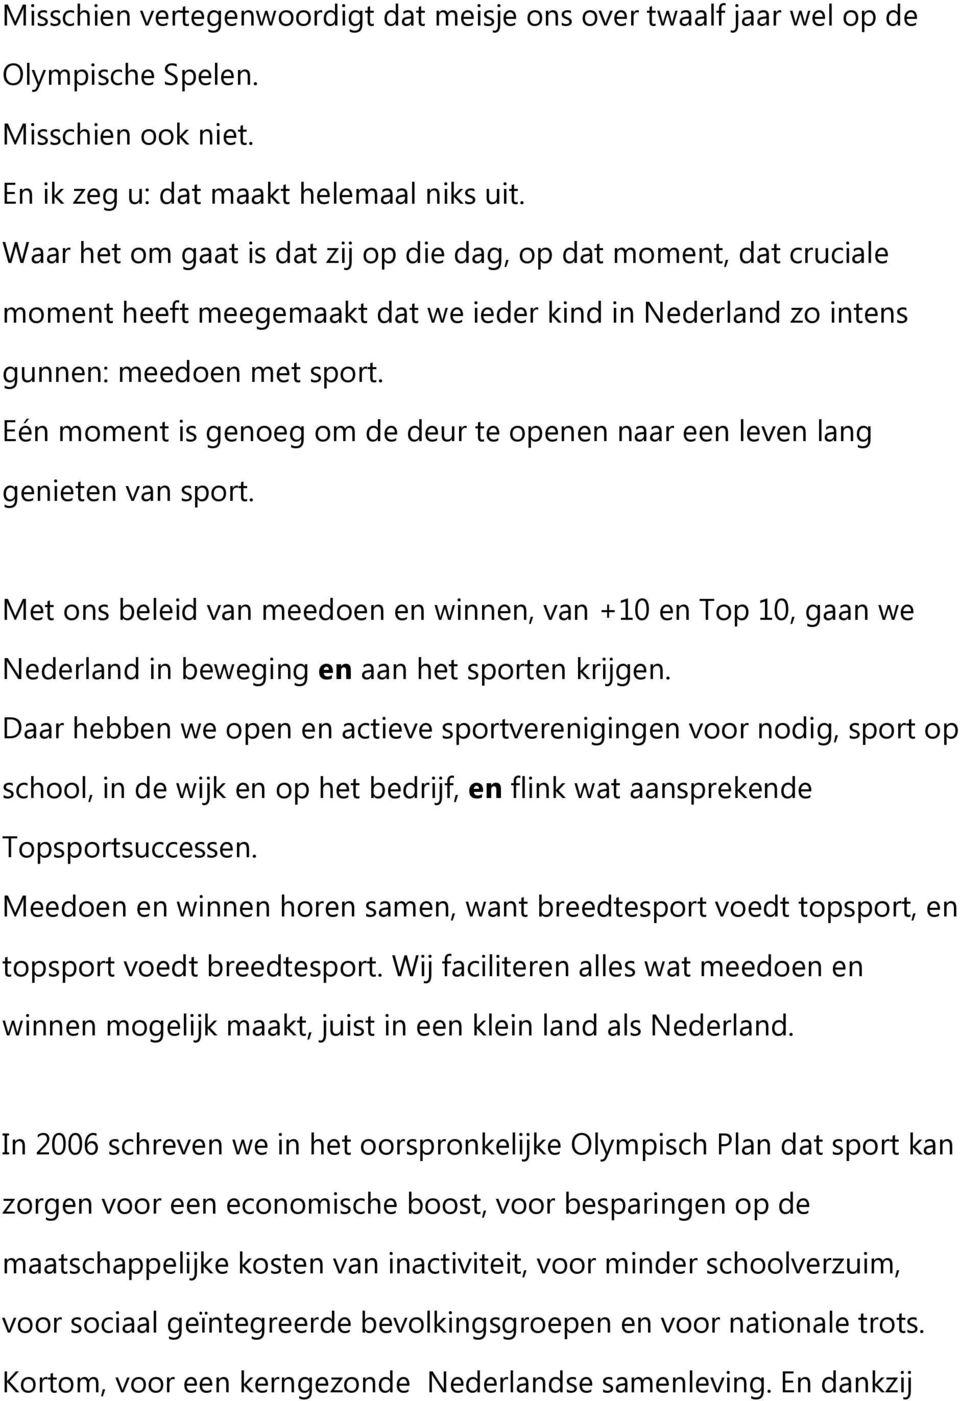 Eén moment is genoeg om de deur te openen naar een leven lang genieten van sport. Met ons beleid van meedoen en winnen, van +10 en Top 10, gaan we Nederland in beweging en aan het sporten krijgen.